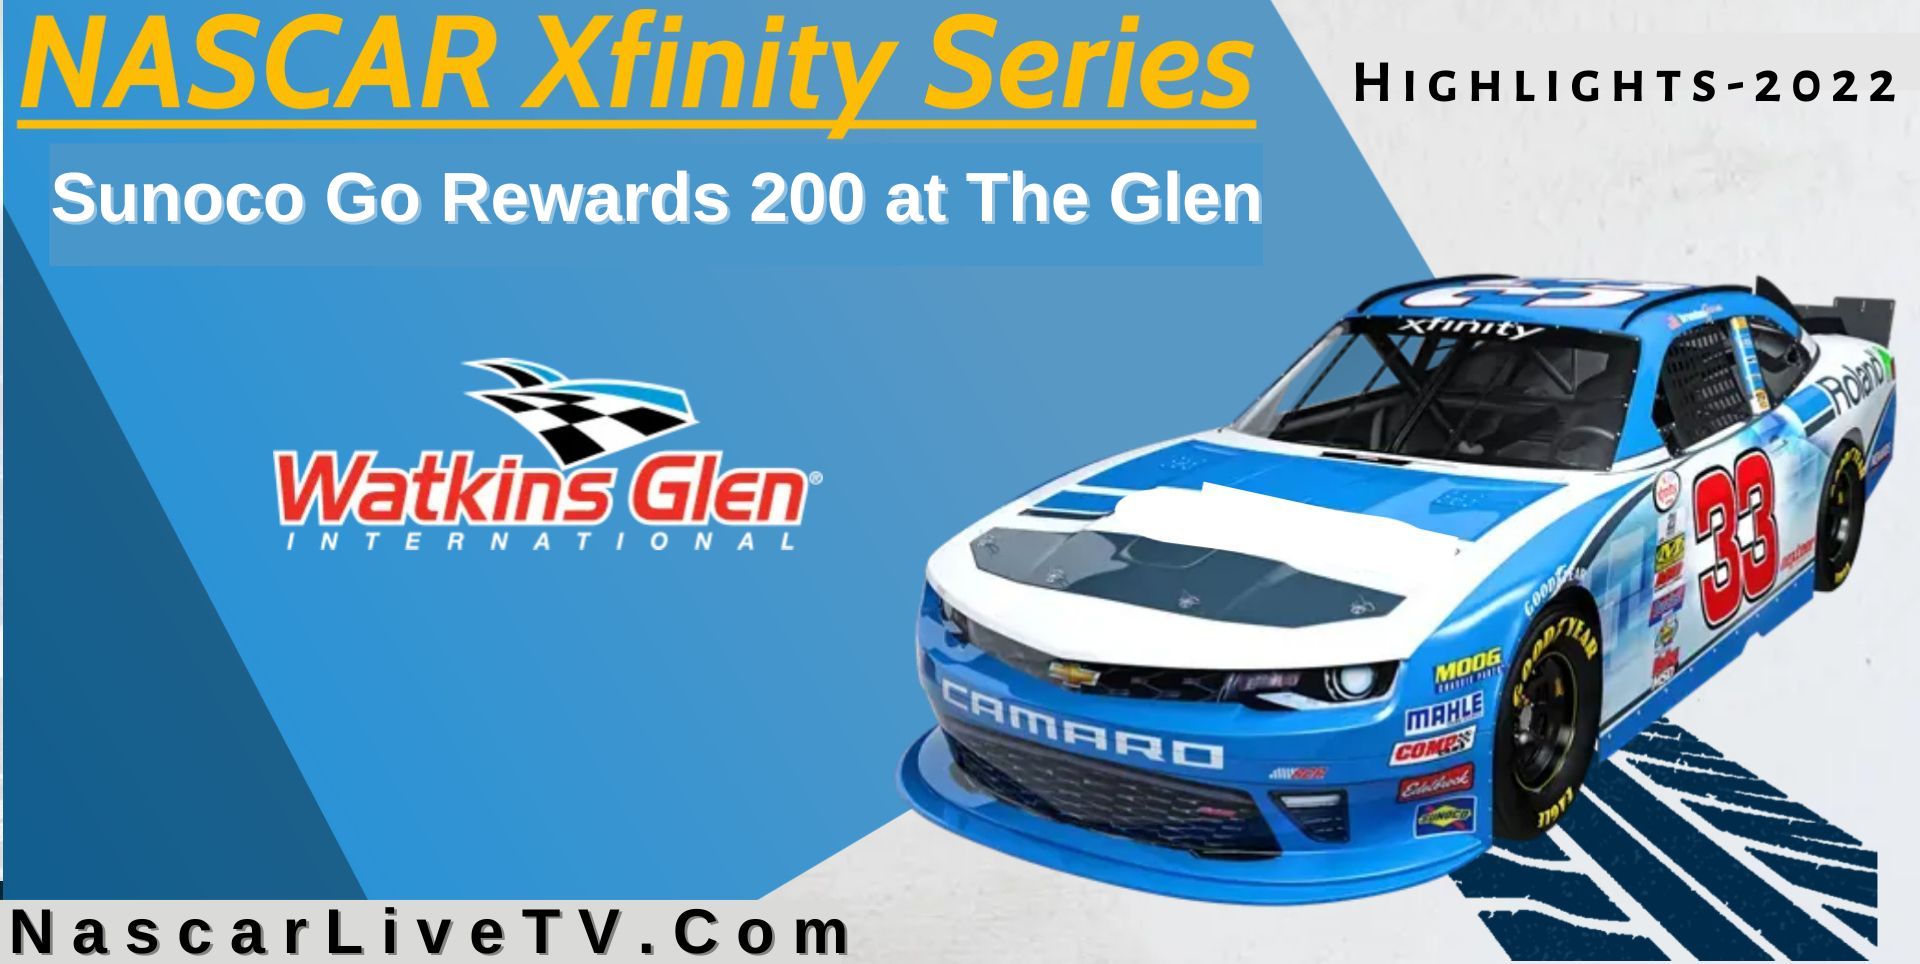 Sunoco Go Rewards 200 Highlights NASCAR Xfinity 2022